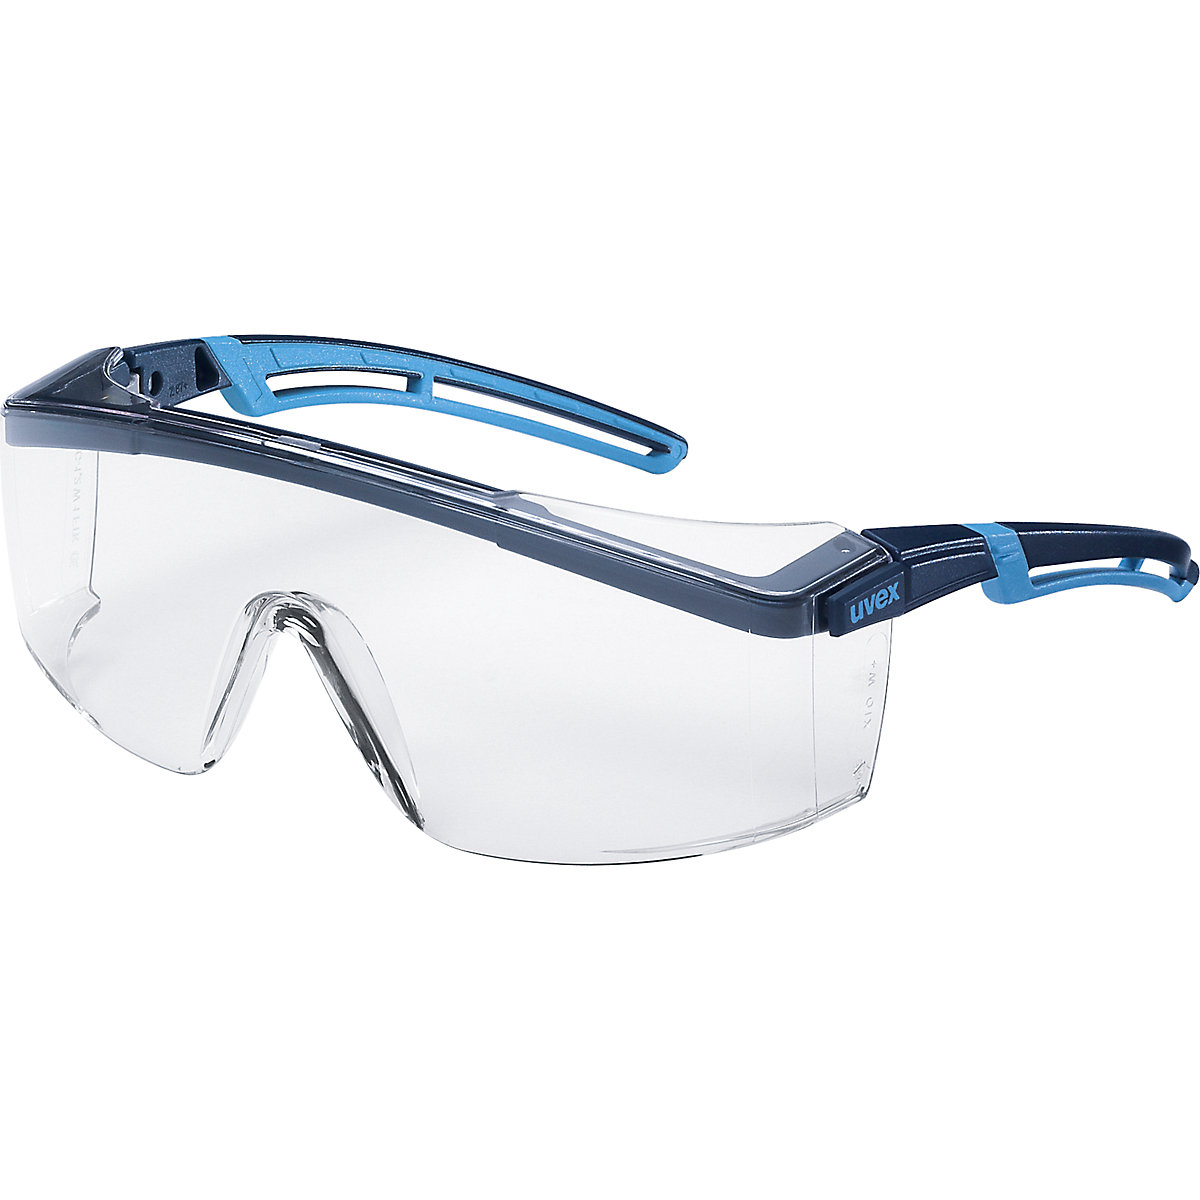 Bügelschutzbrille atrospec 2.0 Uvex